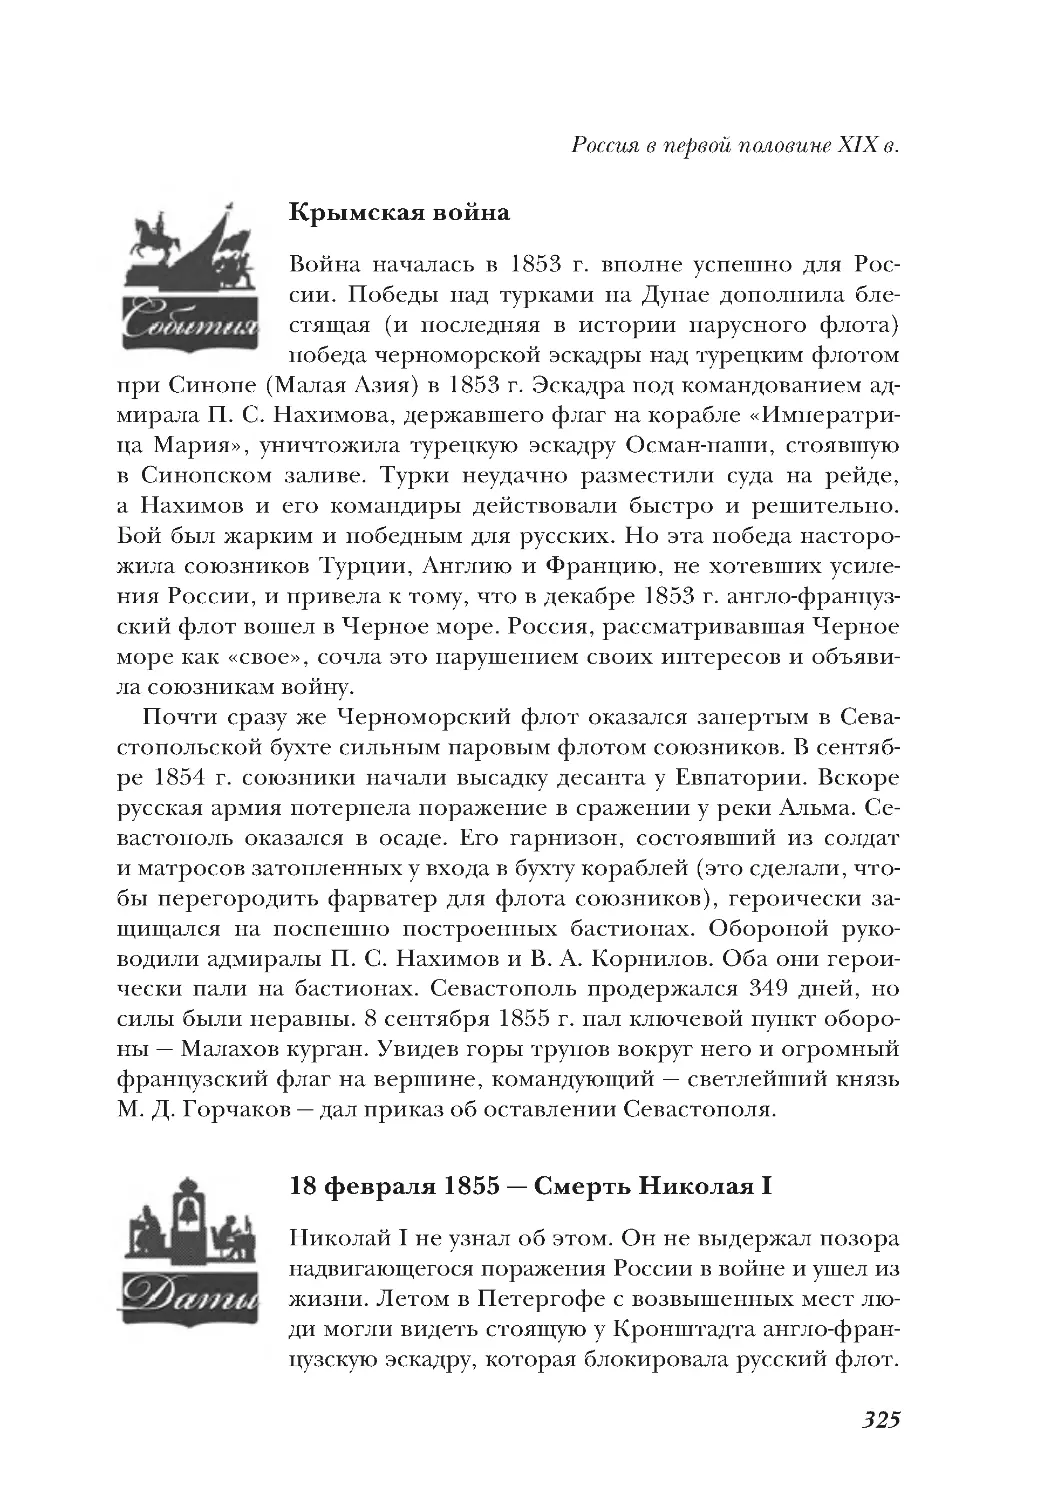 Крымская война
18 февраля 1855 — Смерть Николая I